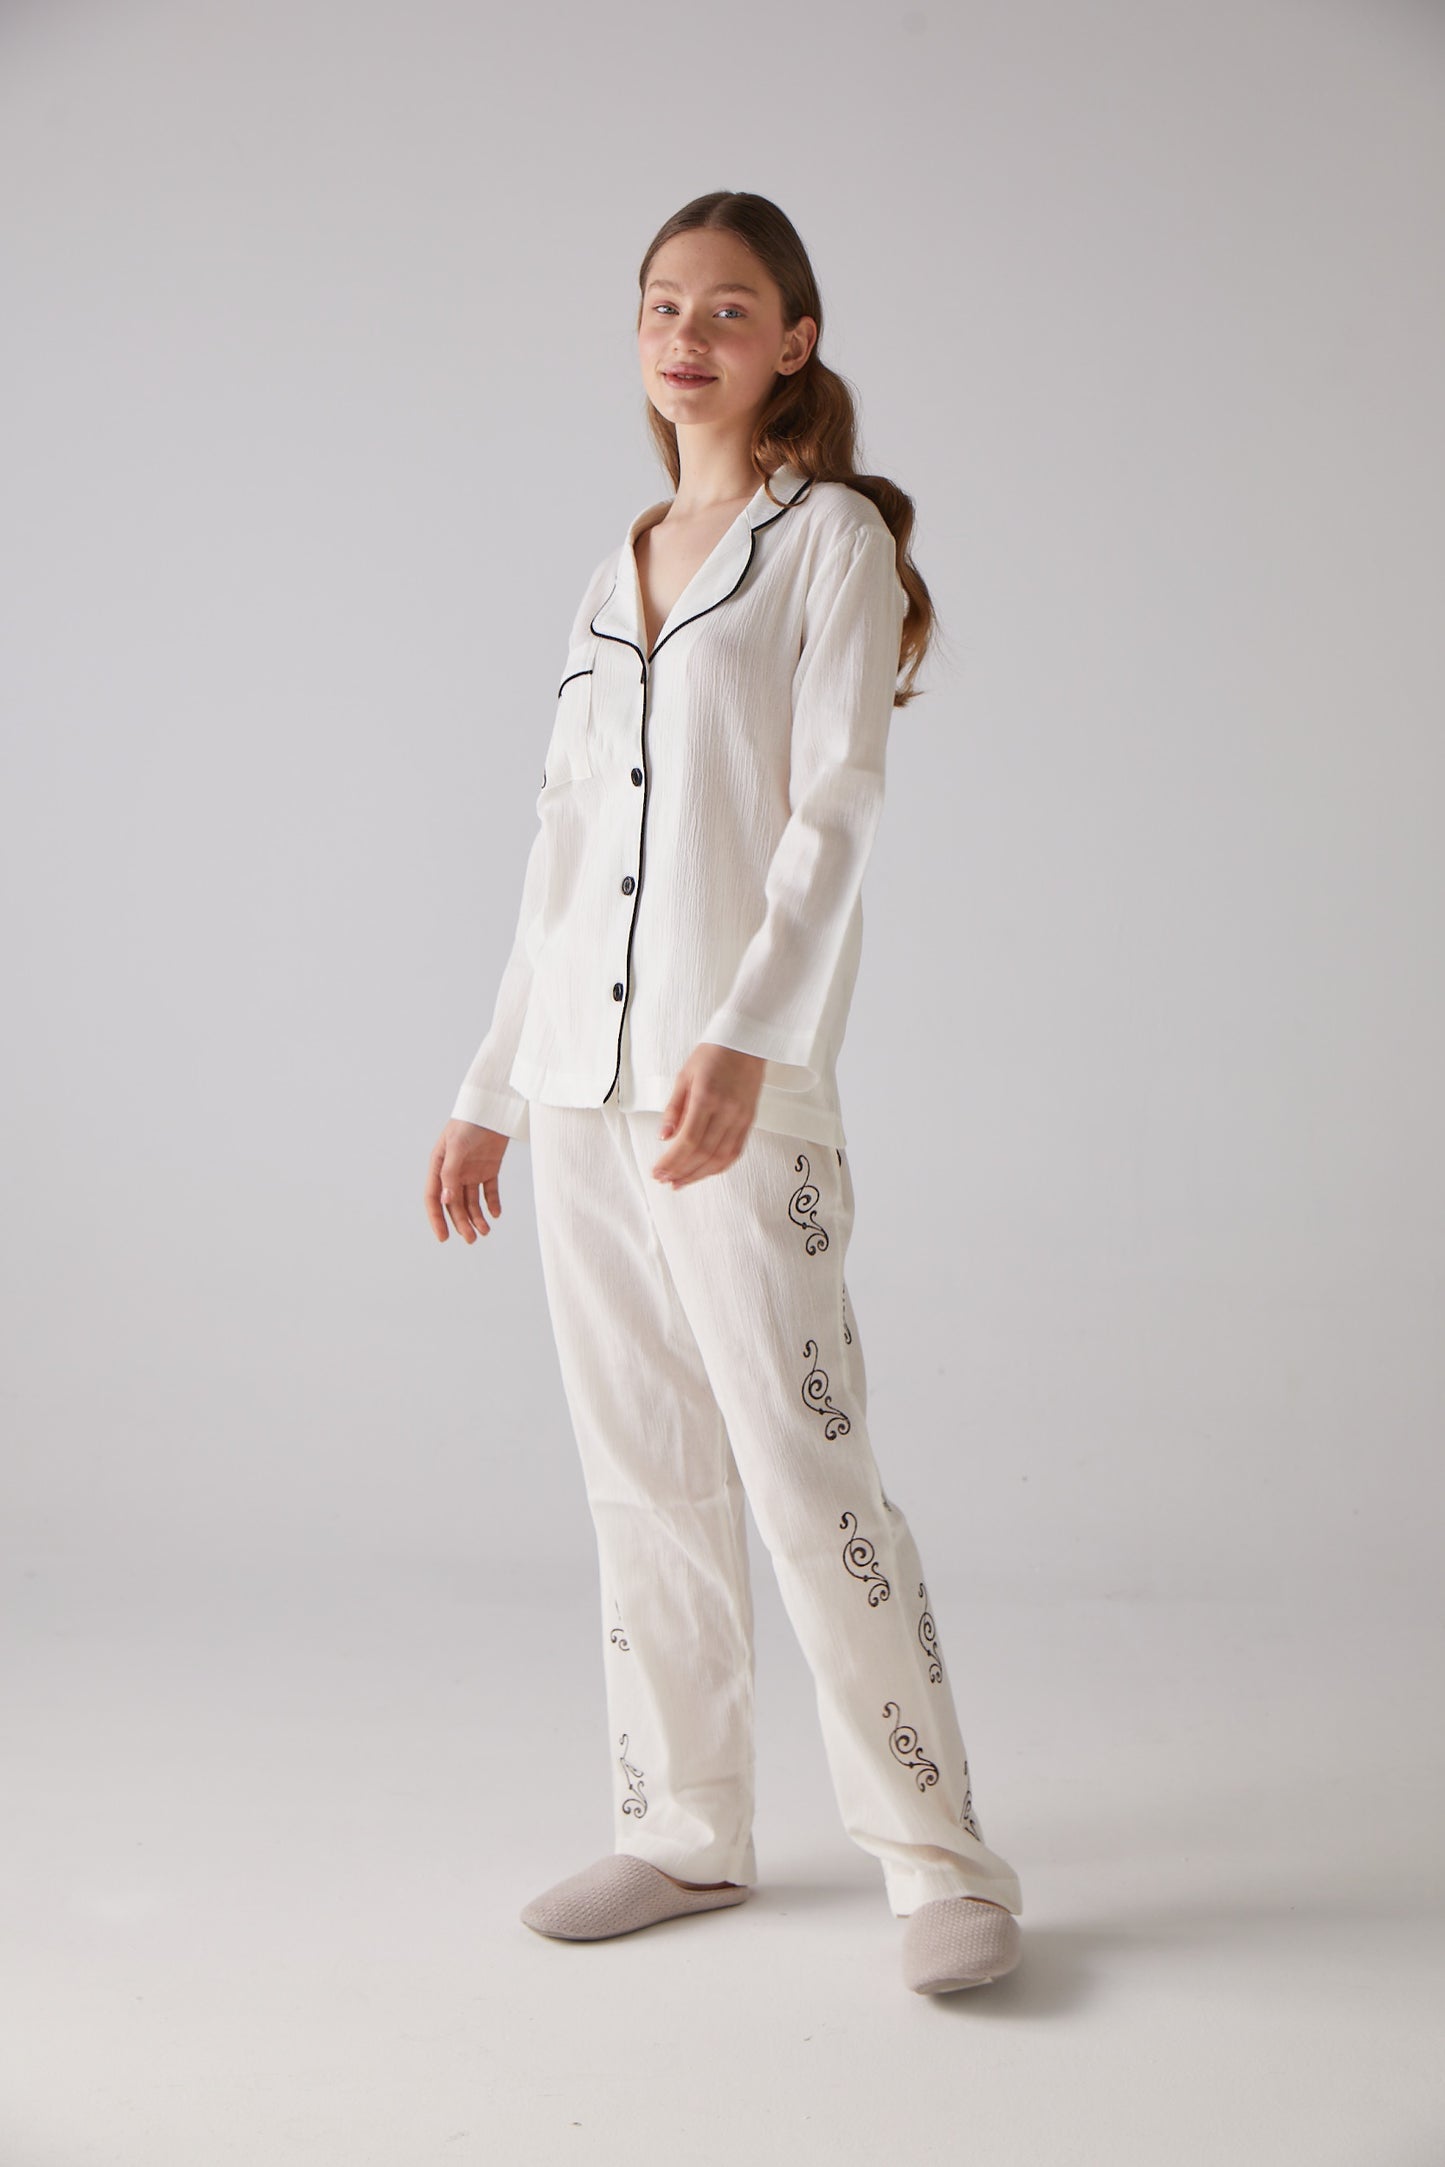 Ensemble Pyjama Long Blanc Motif Clef - 100% Coton Bio